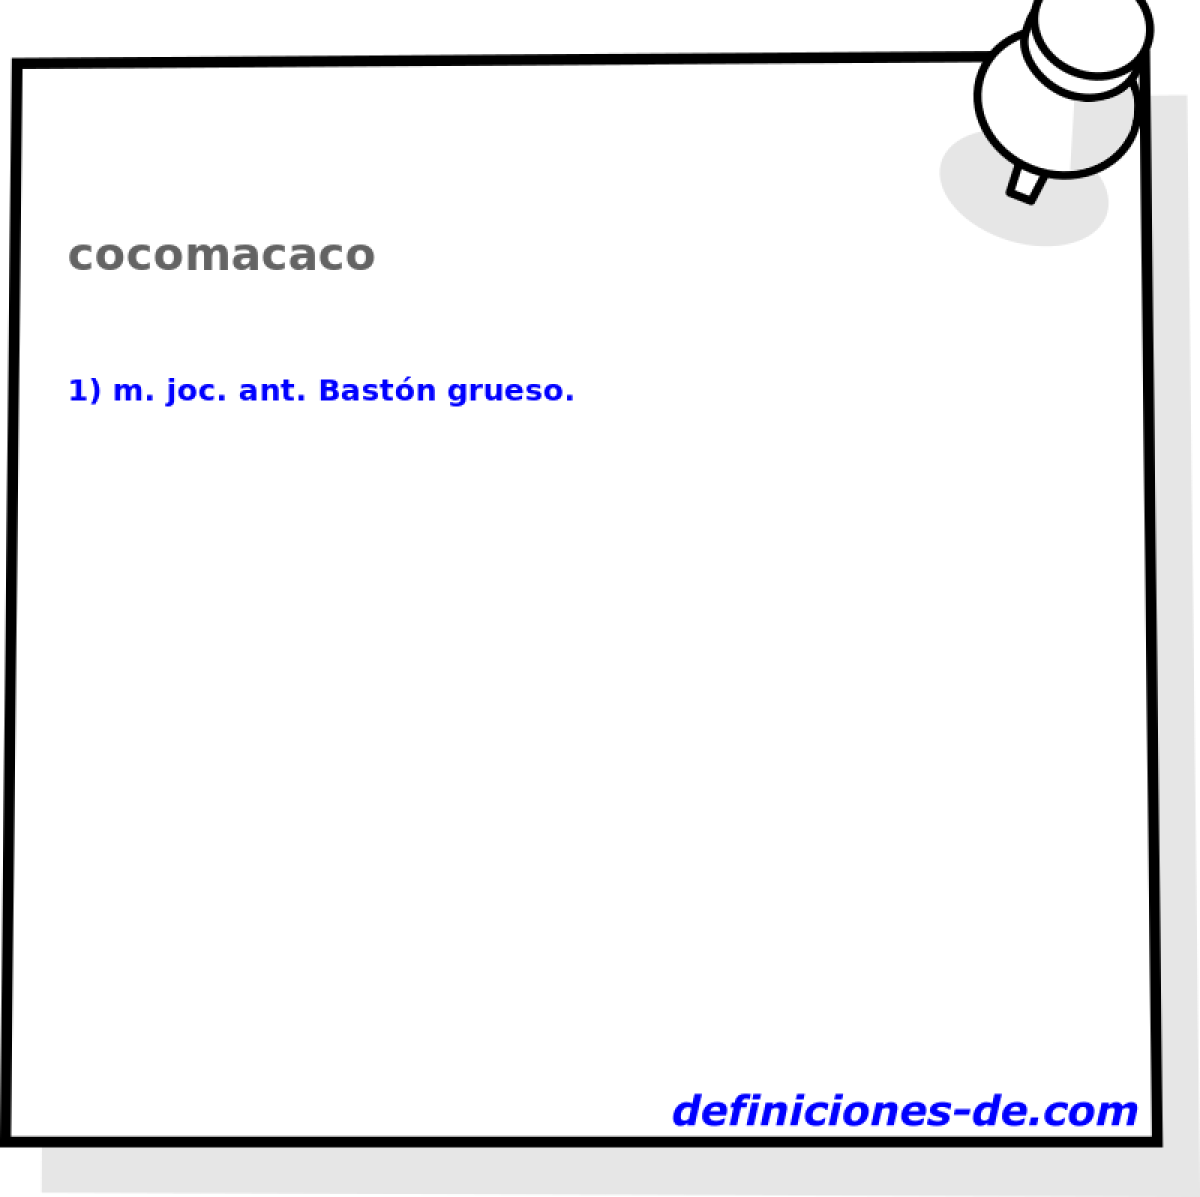 cocomacaco 